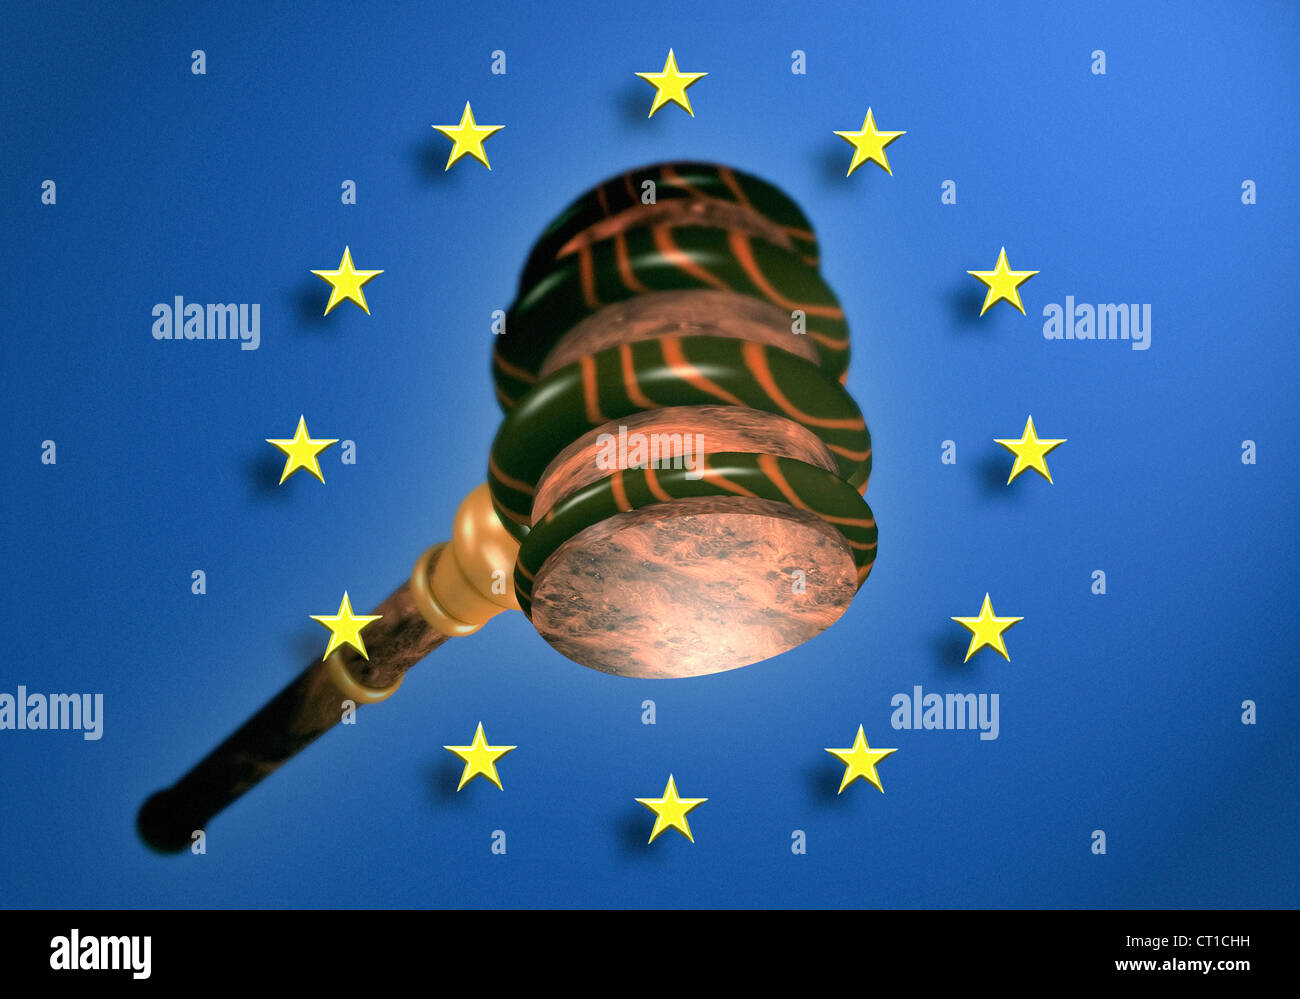 Hammer oder Auktion mit Europaflagge - Richter Hammer Oder Auktionshammer Vor Europa Fahne hammer Stockfoto